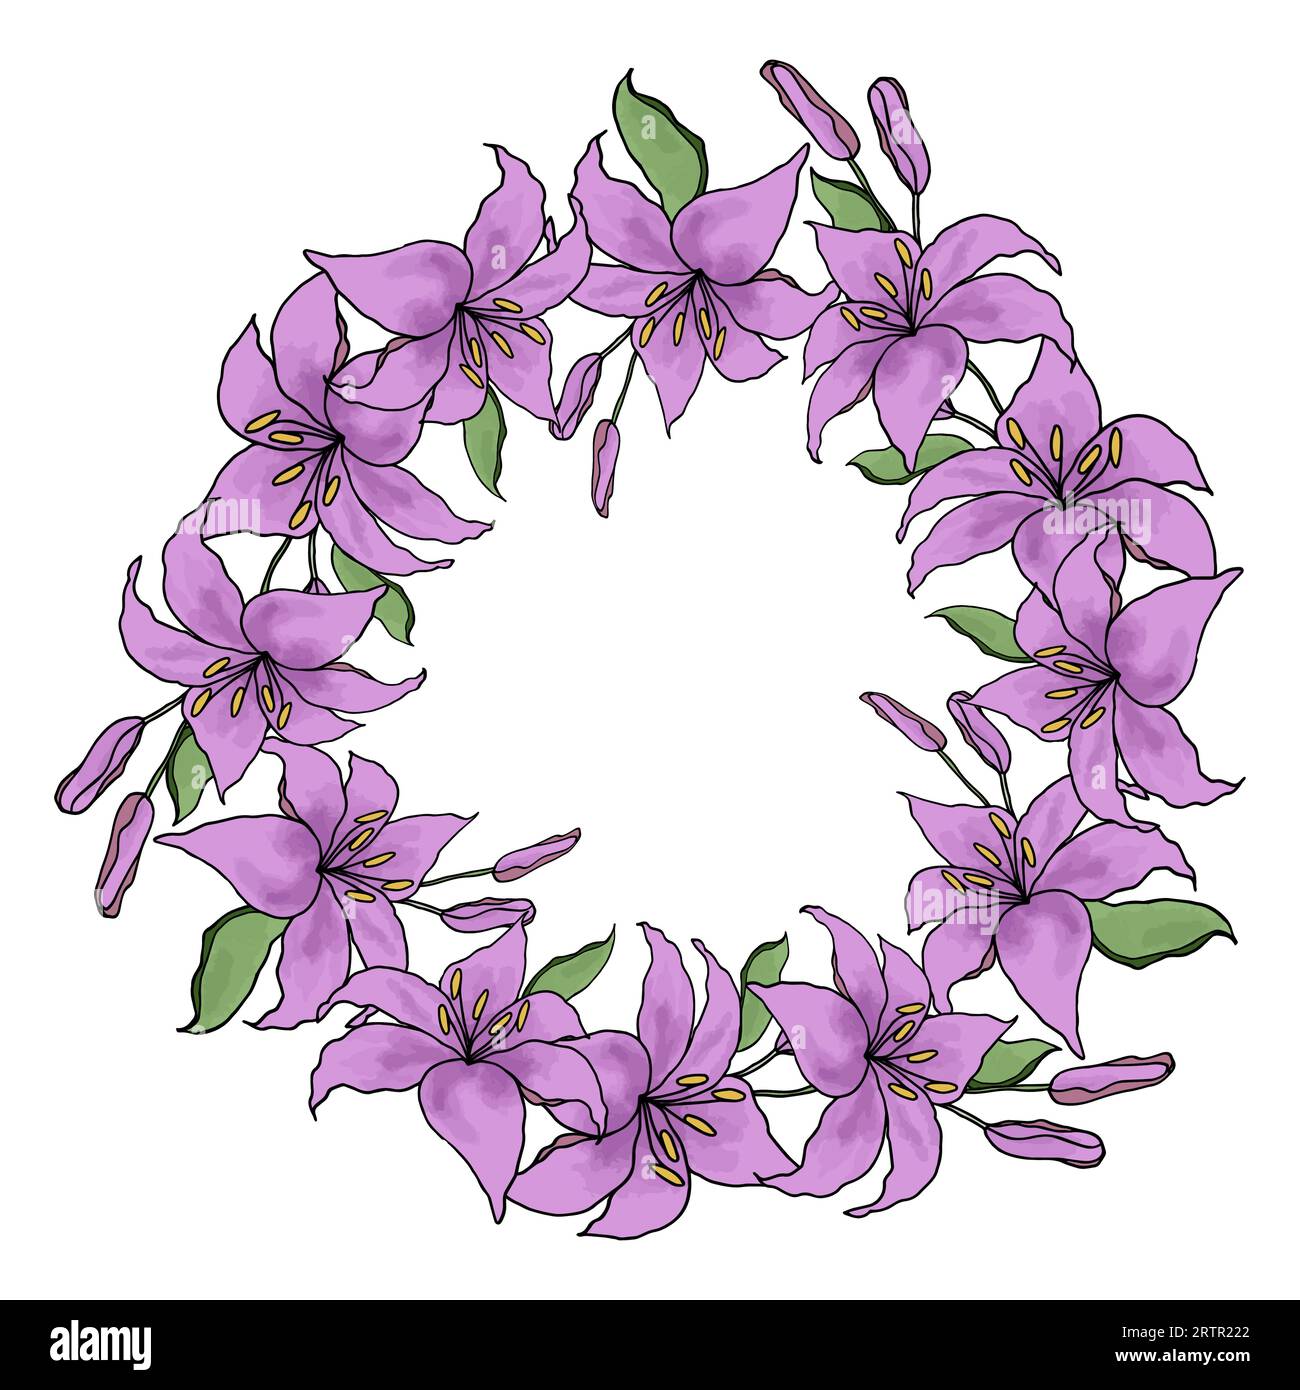 Lilly flower line art guirlande couronne cercle set, fond vectoriel Illustration de Vecteur